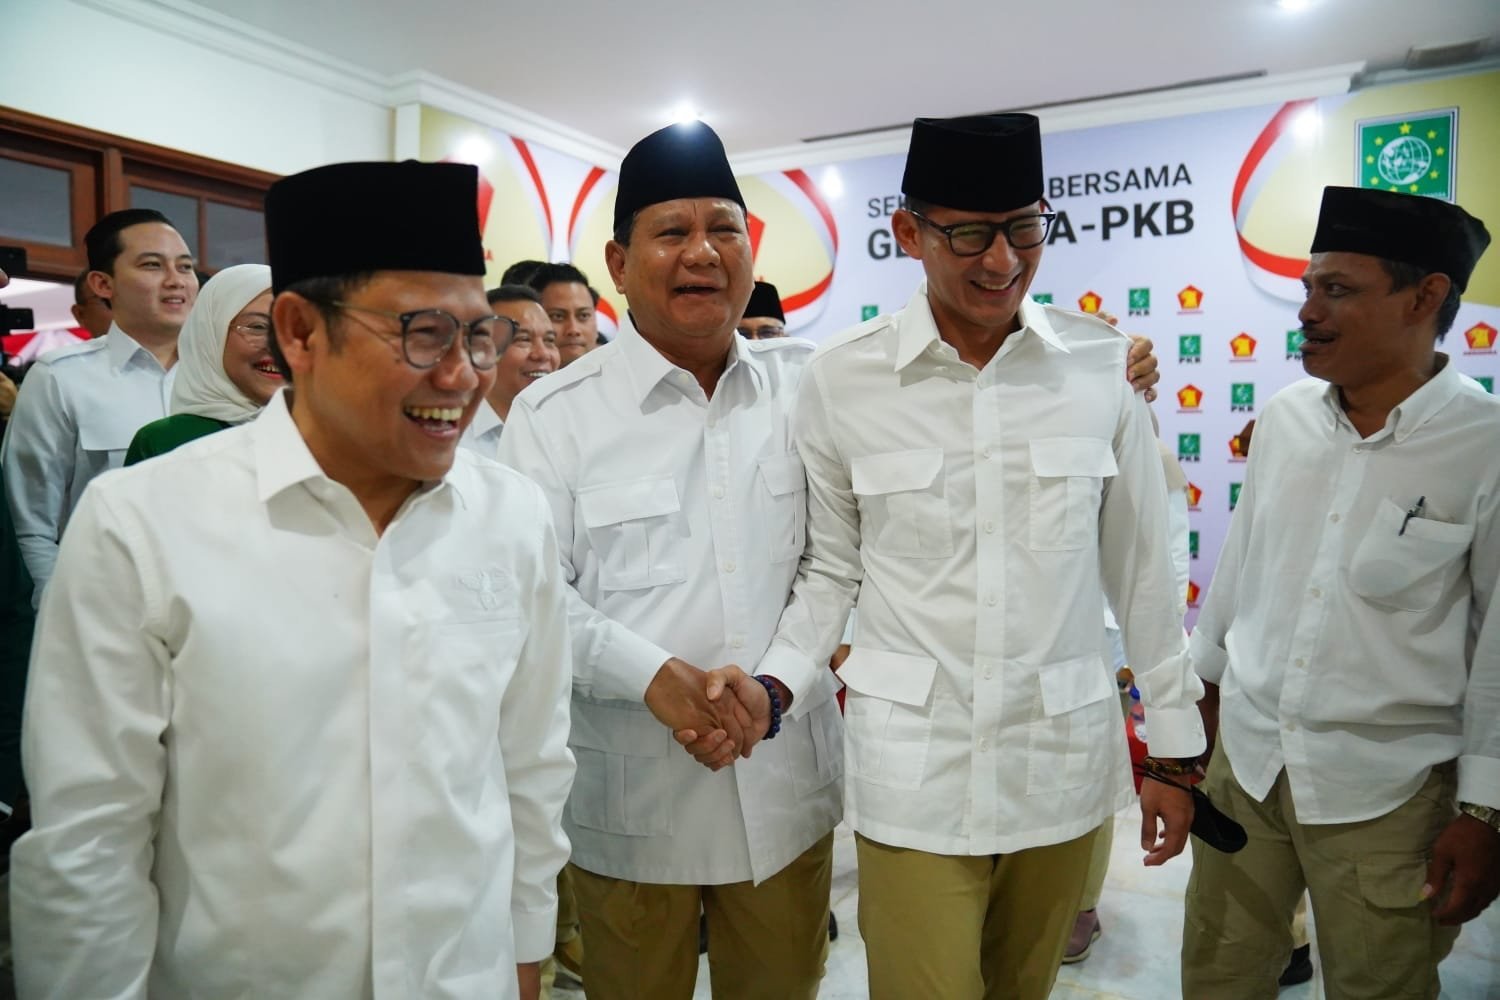 Kebersamaan Prabowo dan Sandiaga Uno/Tim Media